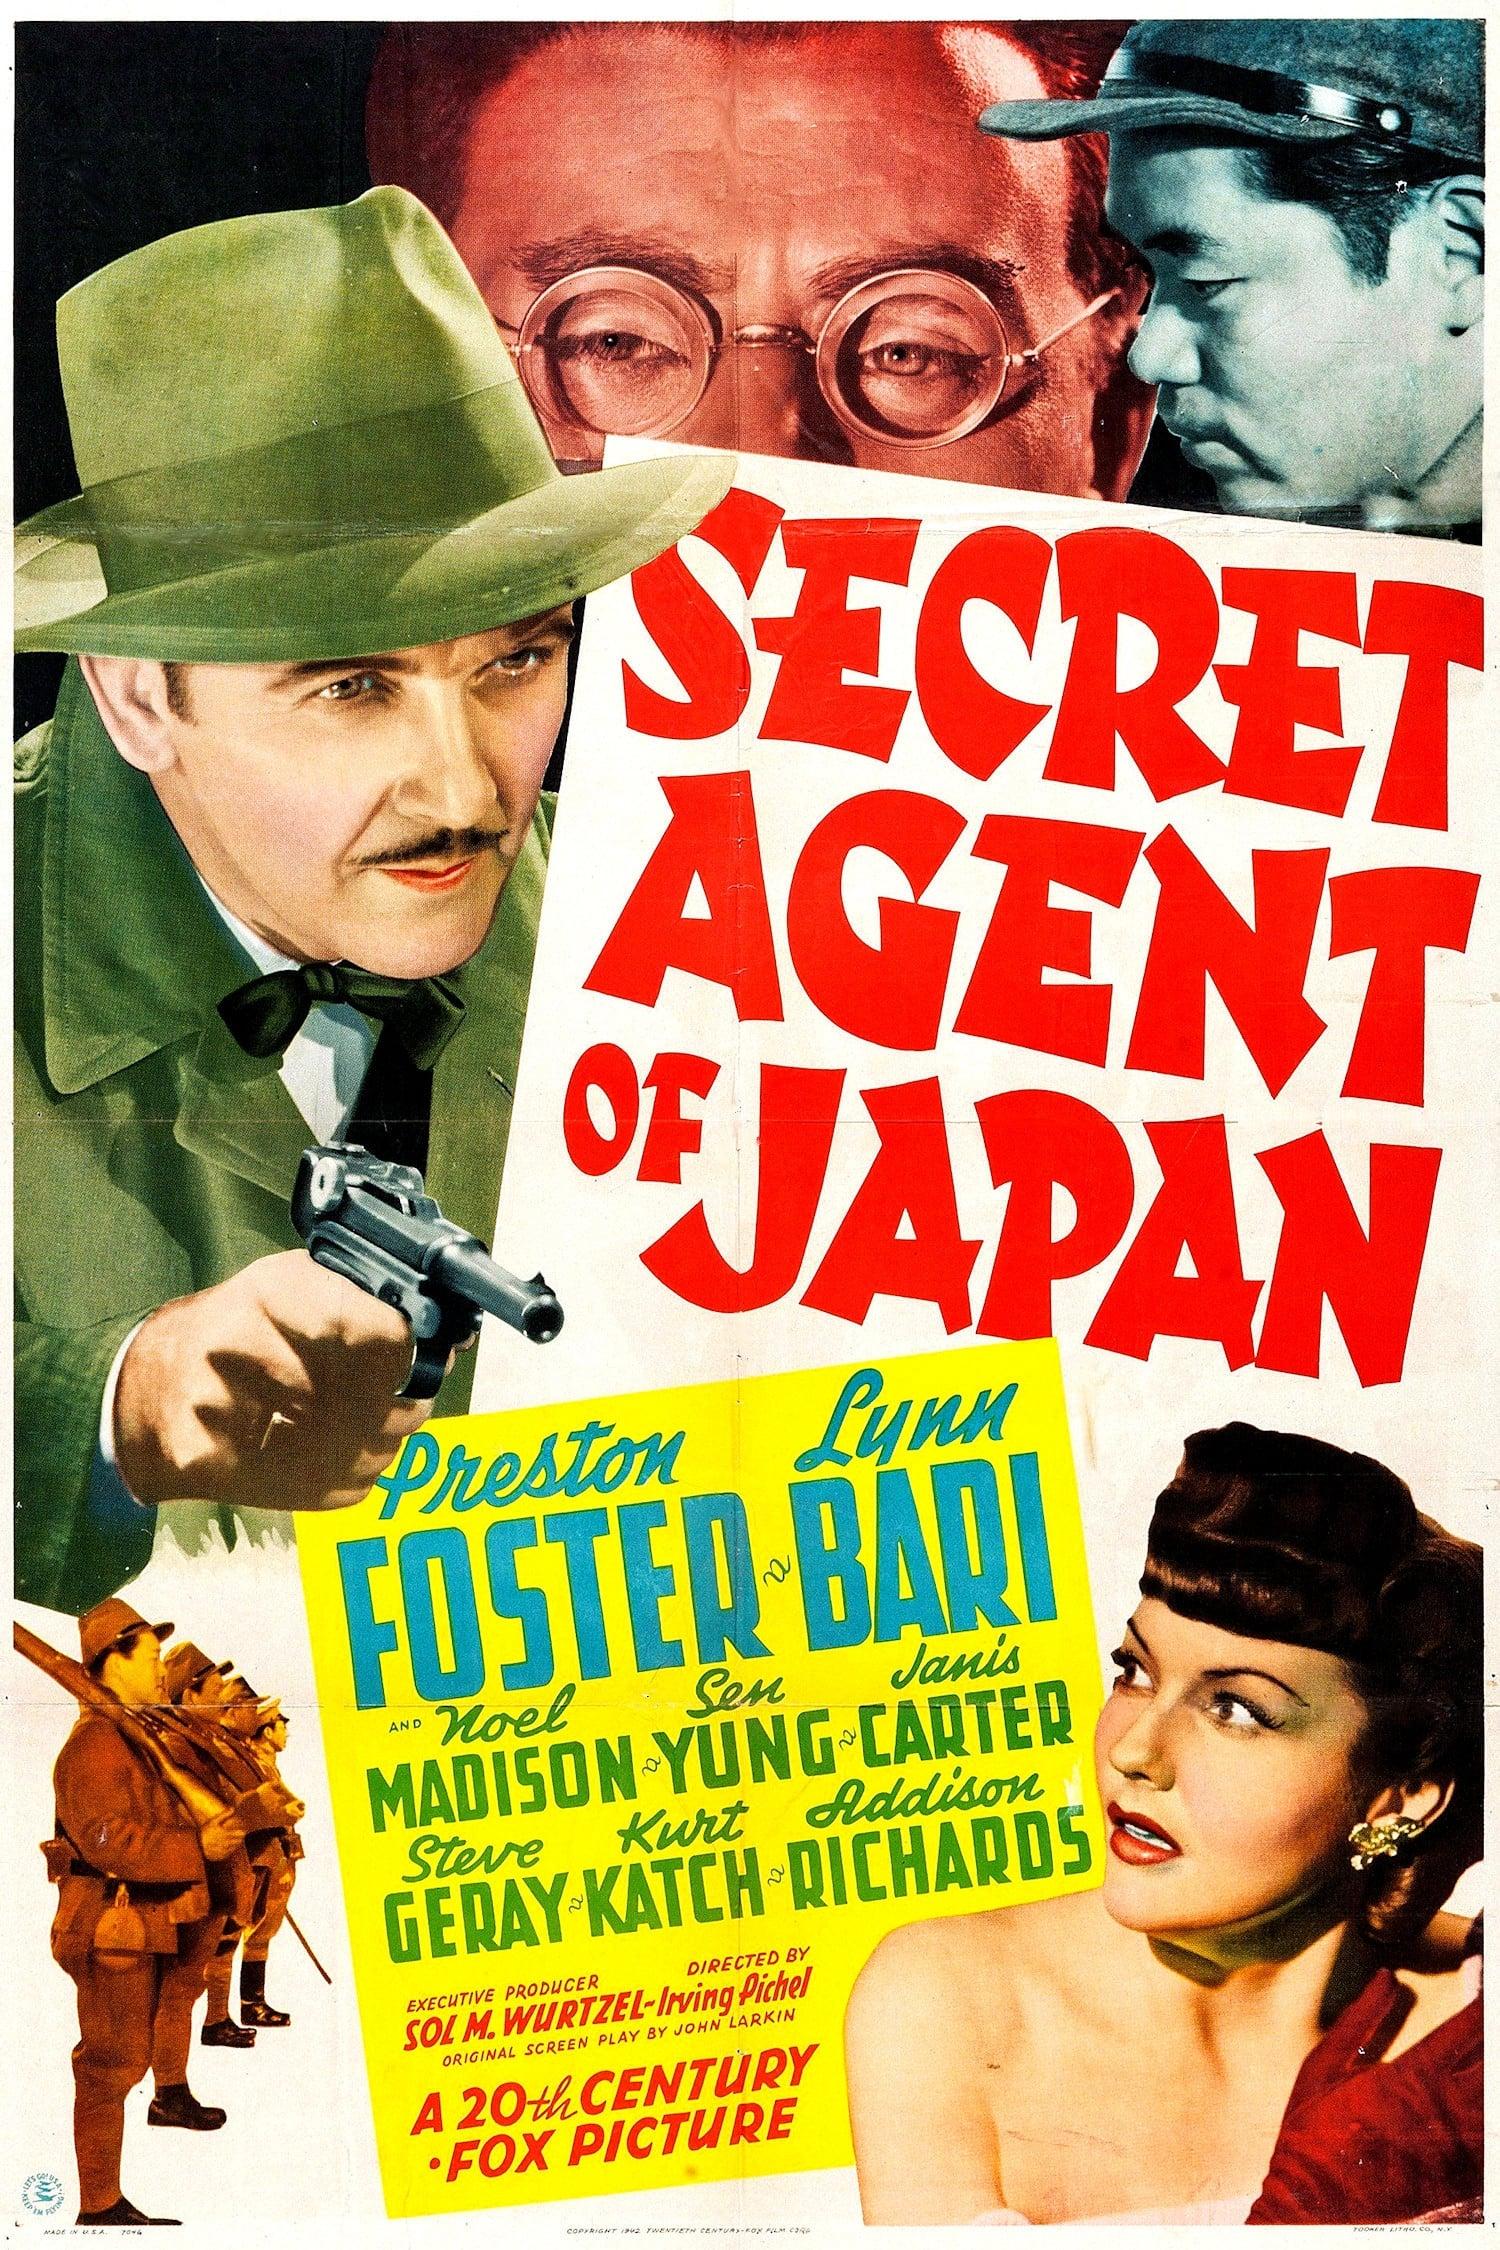 Secret Agent of Japan poster